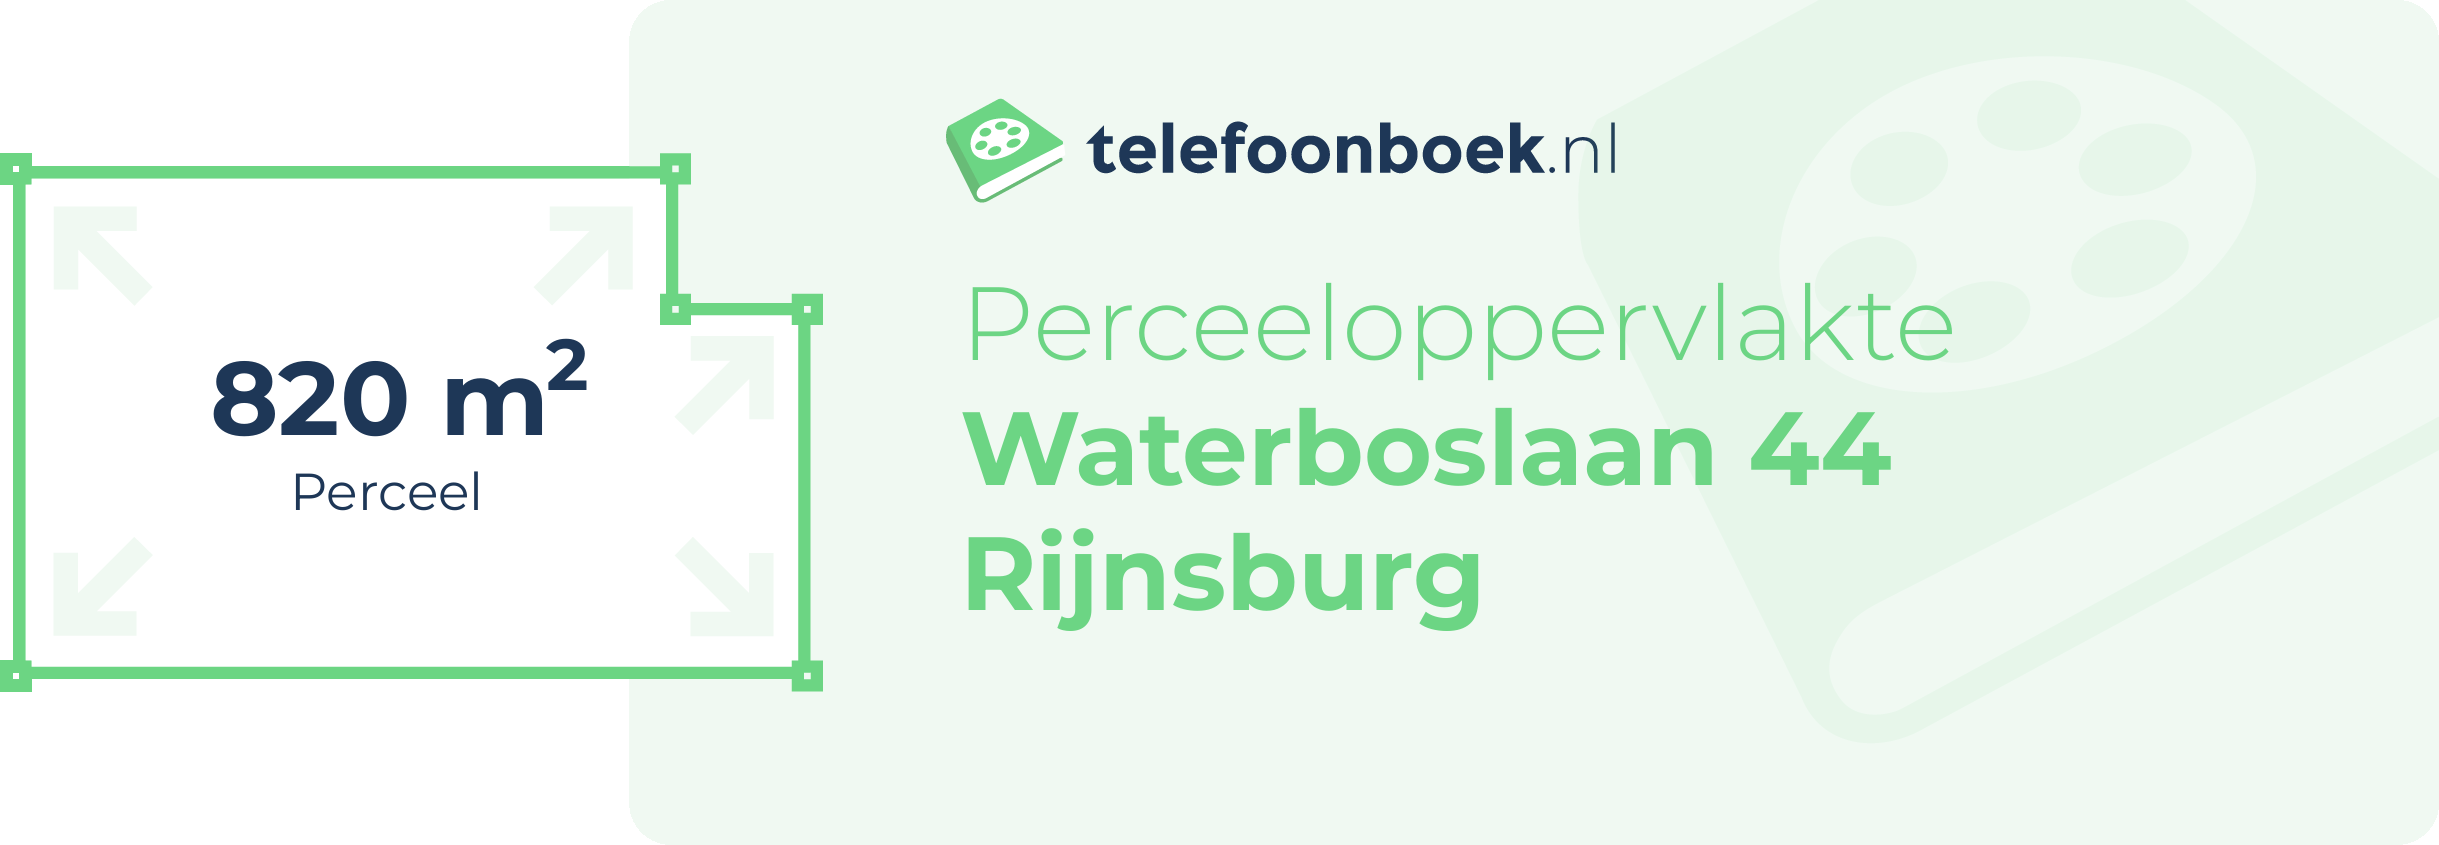 Perceeloppervlakte Waterboslaan 44 Rijnsburg